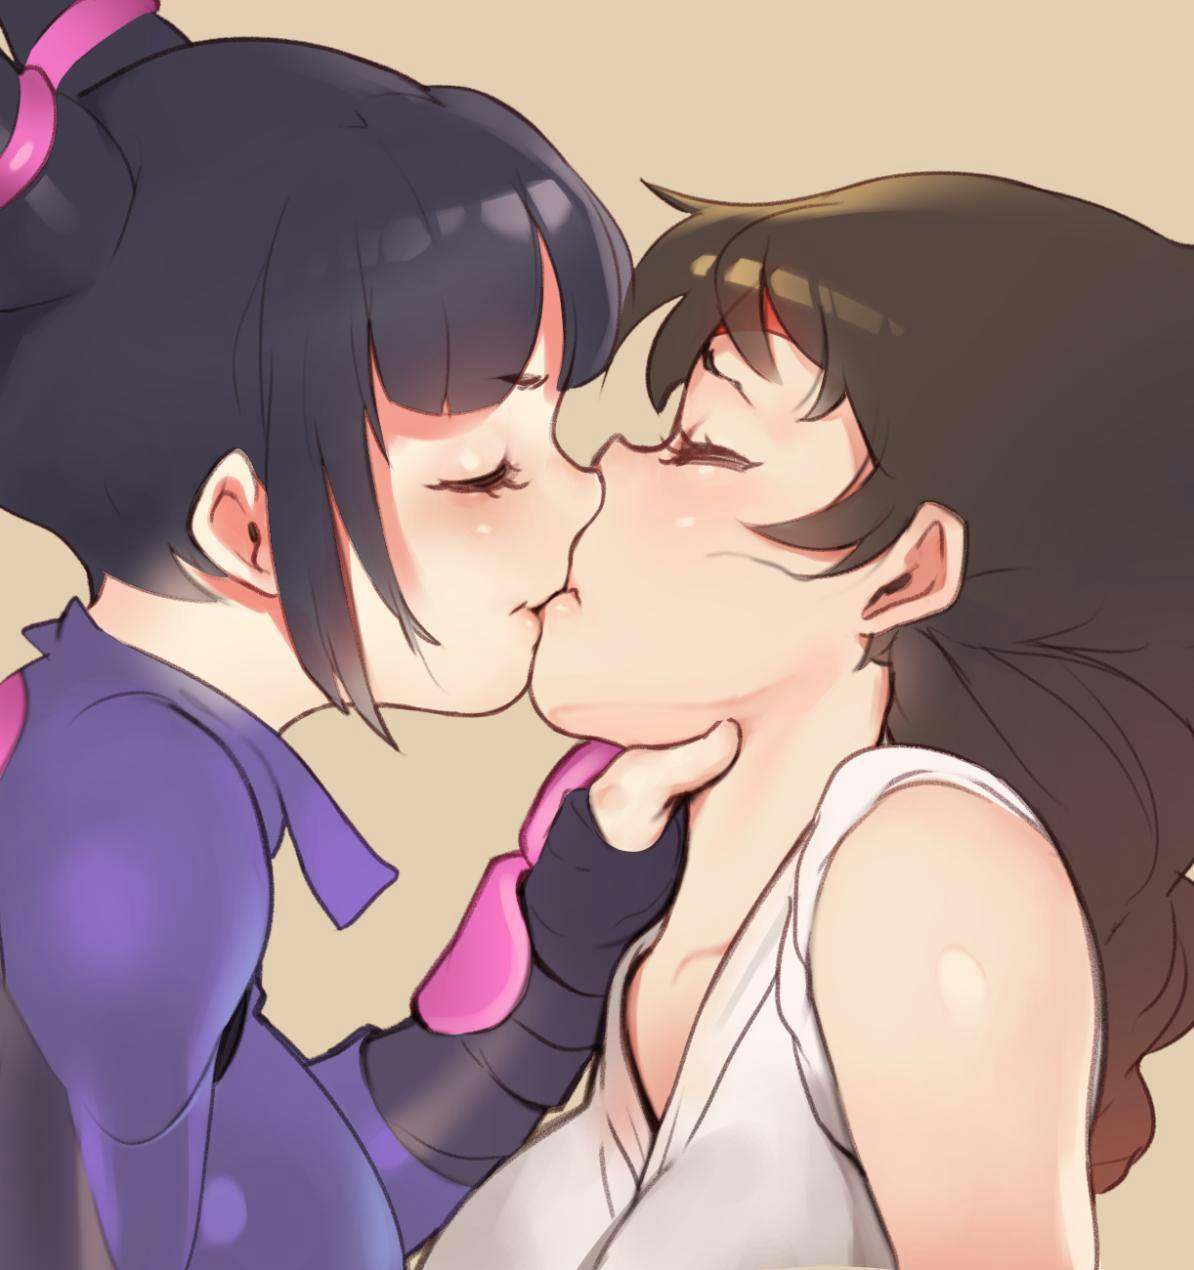 Hardcore Lesbian Hentai - Lesbian Hentai: Best Yuri Hentai to Read and Stream Online